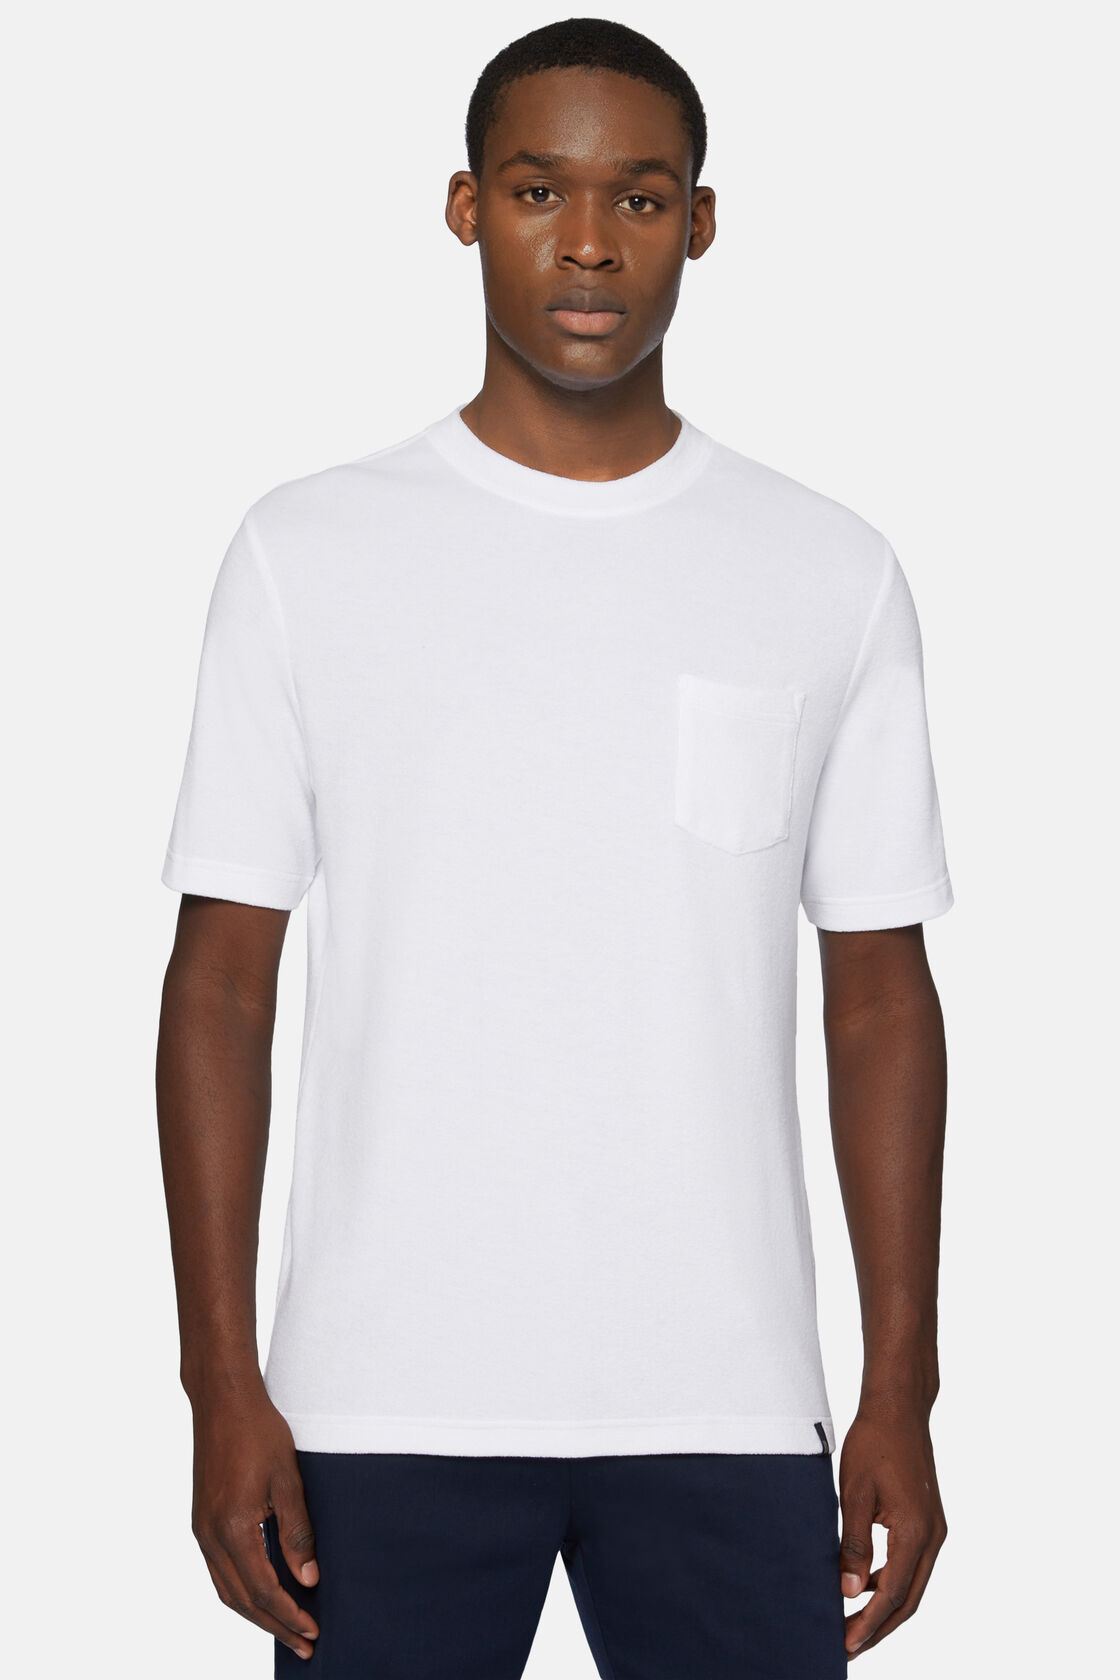 Κοντομάνικο μπλουζάκι από βαμβάκι/νάιλον, White, hi-res